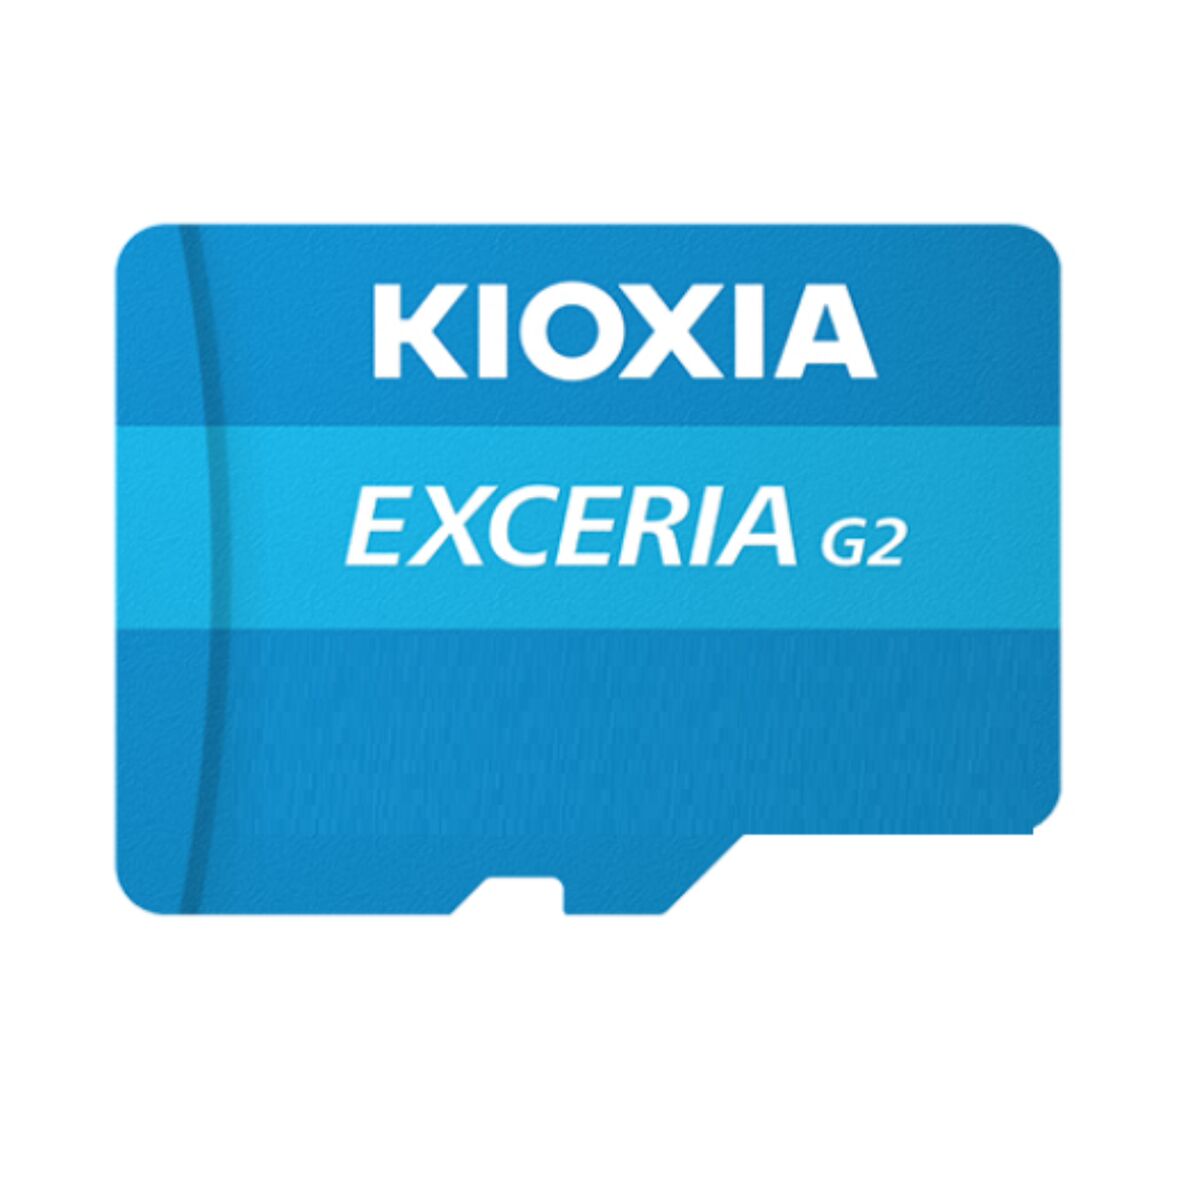 Karta mikro-SD Kioxia EXCERIA G2